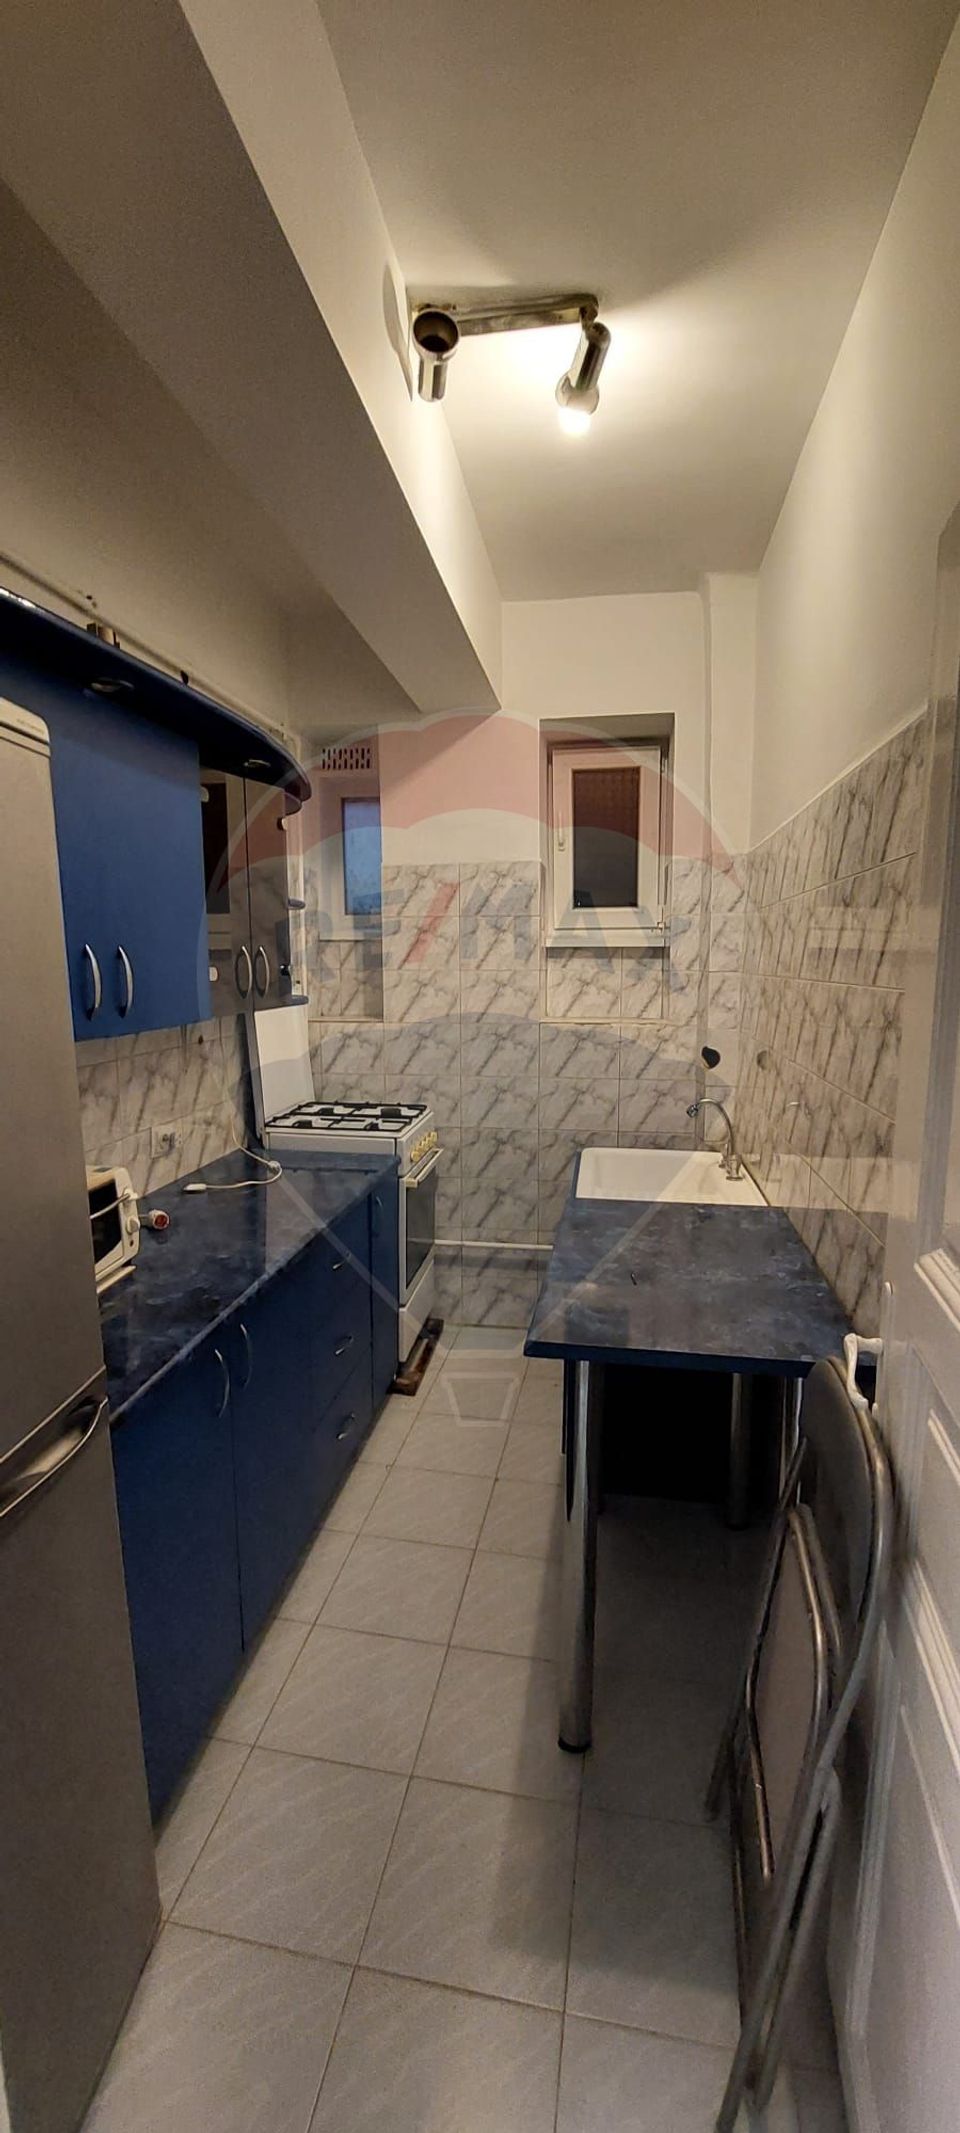 Rent apartment 2 rooms, dec, boiler, basement, Dimitrov